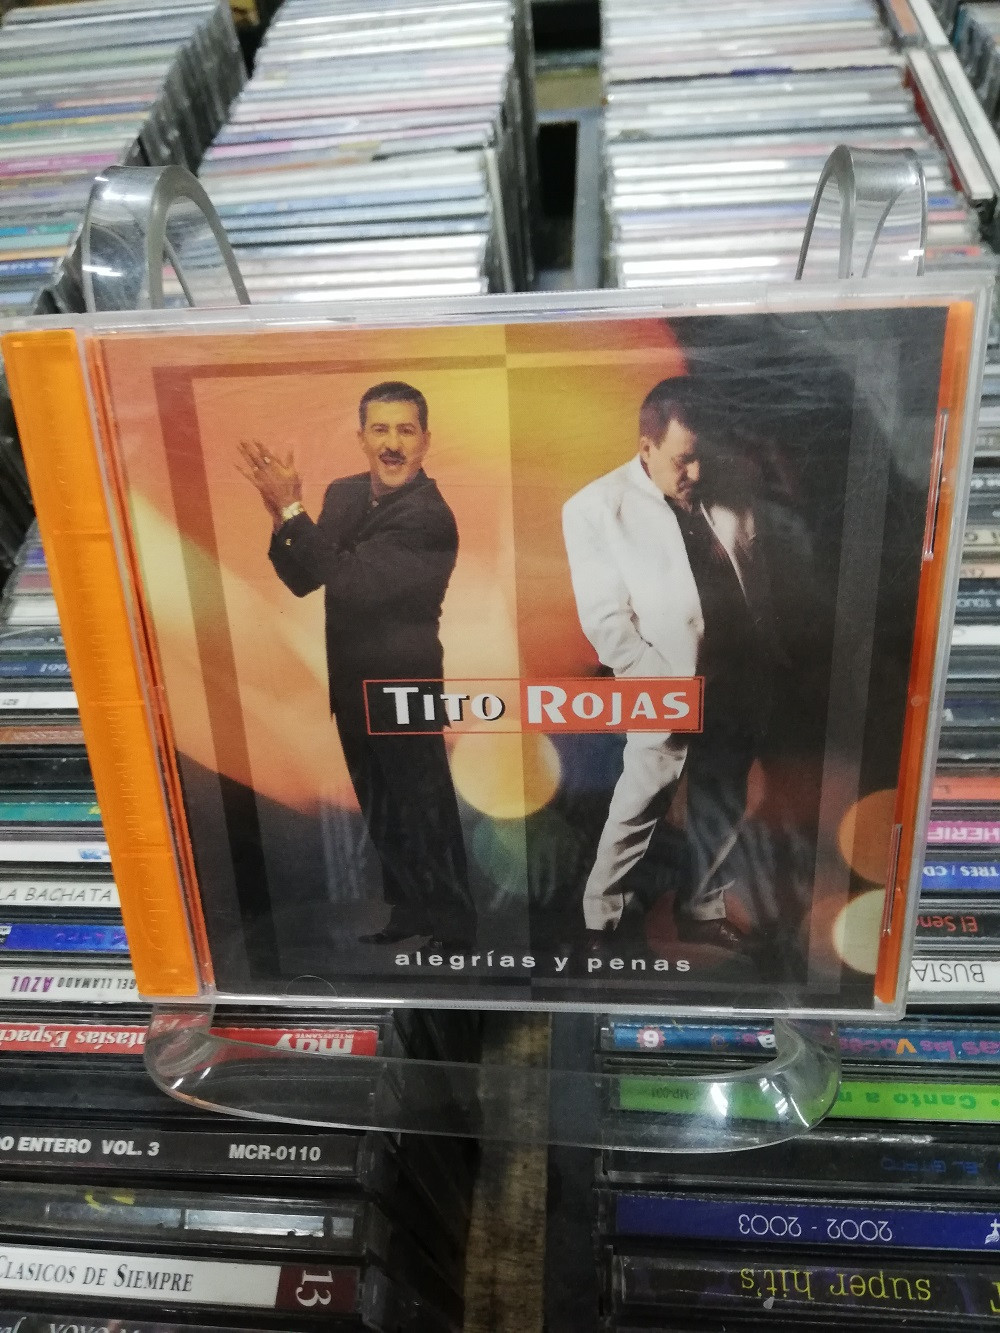 Imagen CD TITO ROJAS - ALEGRIAS Y PENAS 1